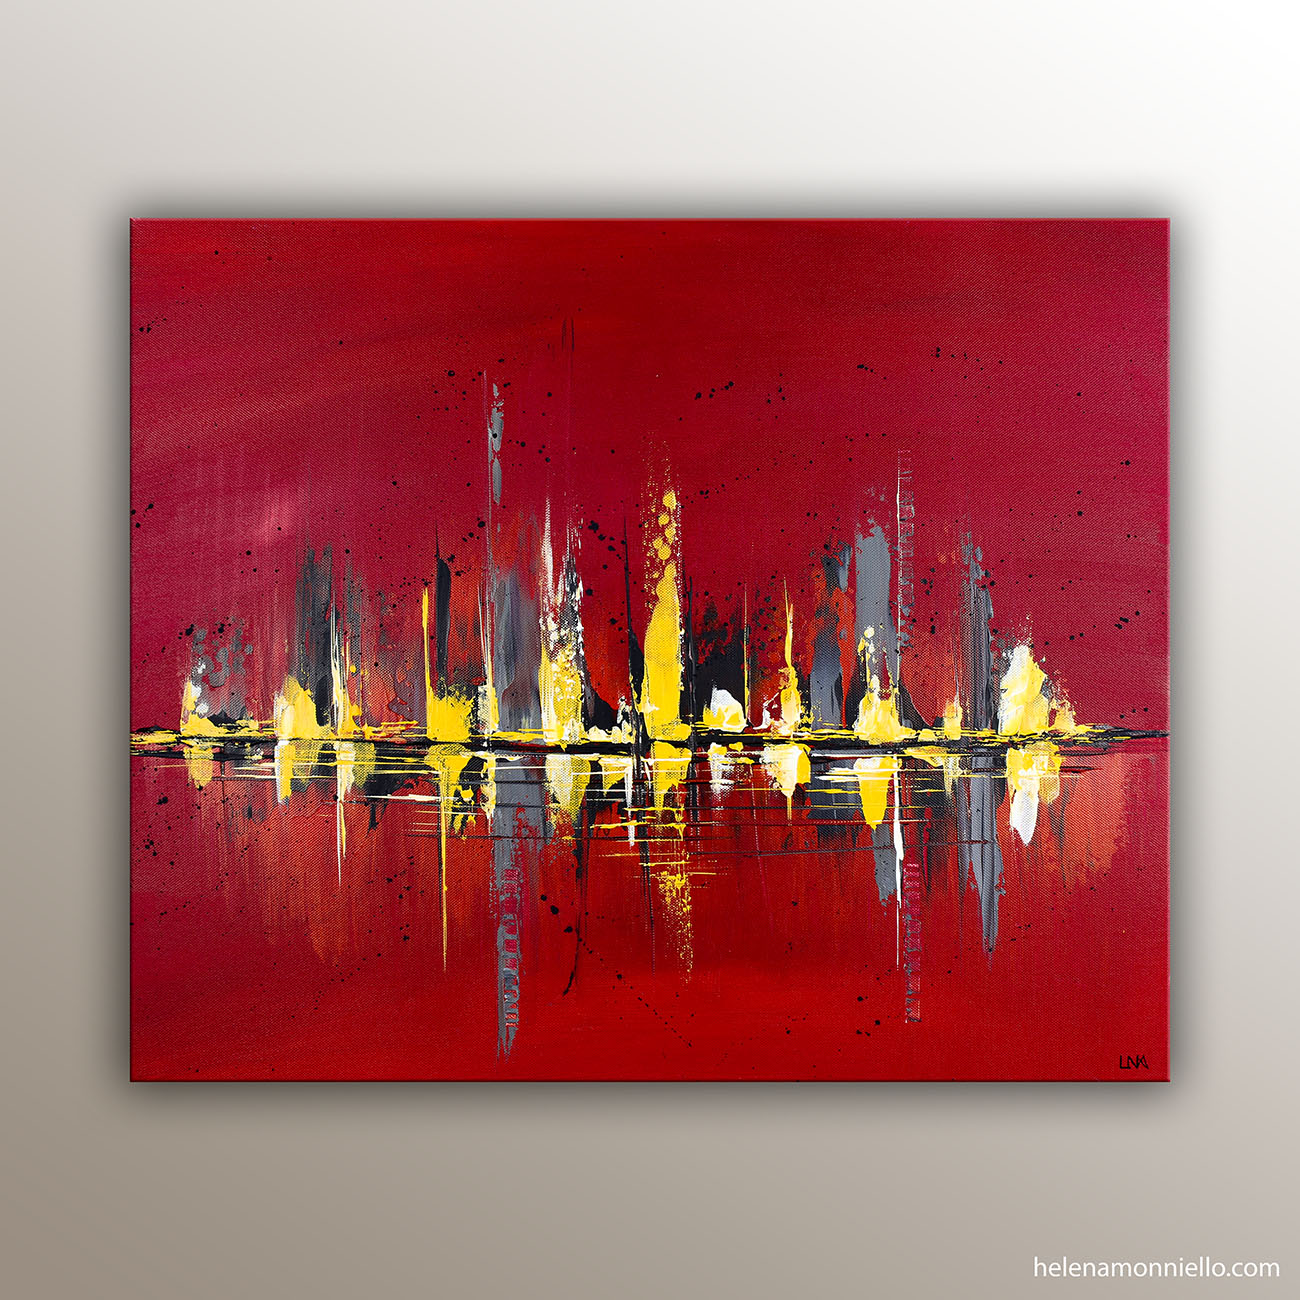 Land 338 est un paysage abstrait acrylique de l'artiste Helena Monniello dans des tons rouges.